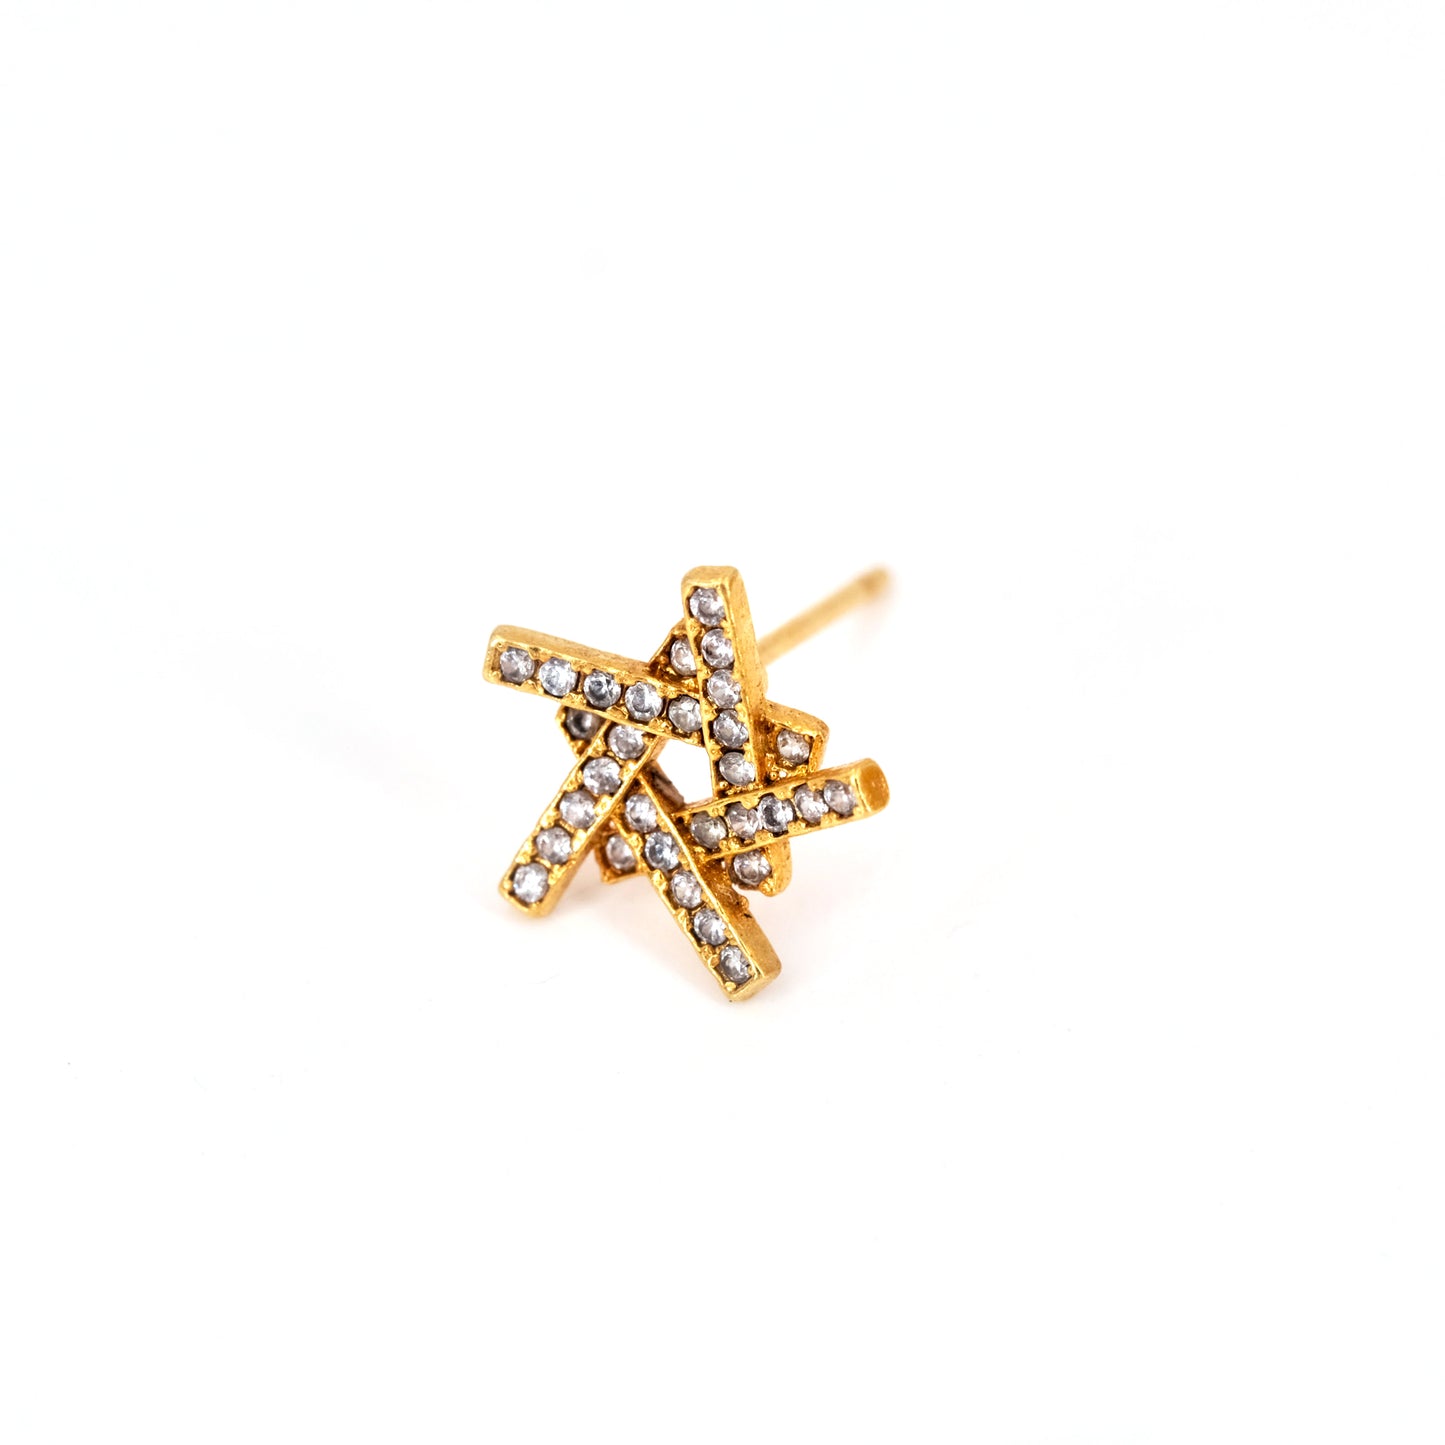 Single star earrings